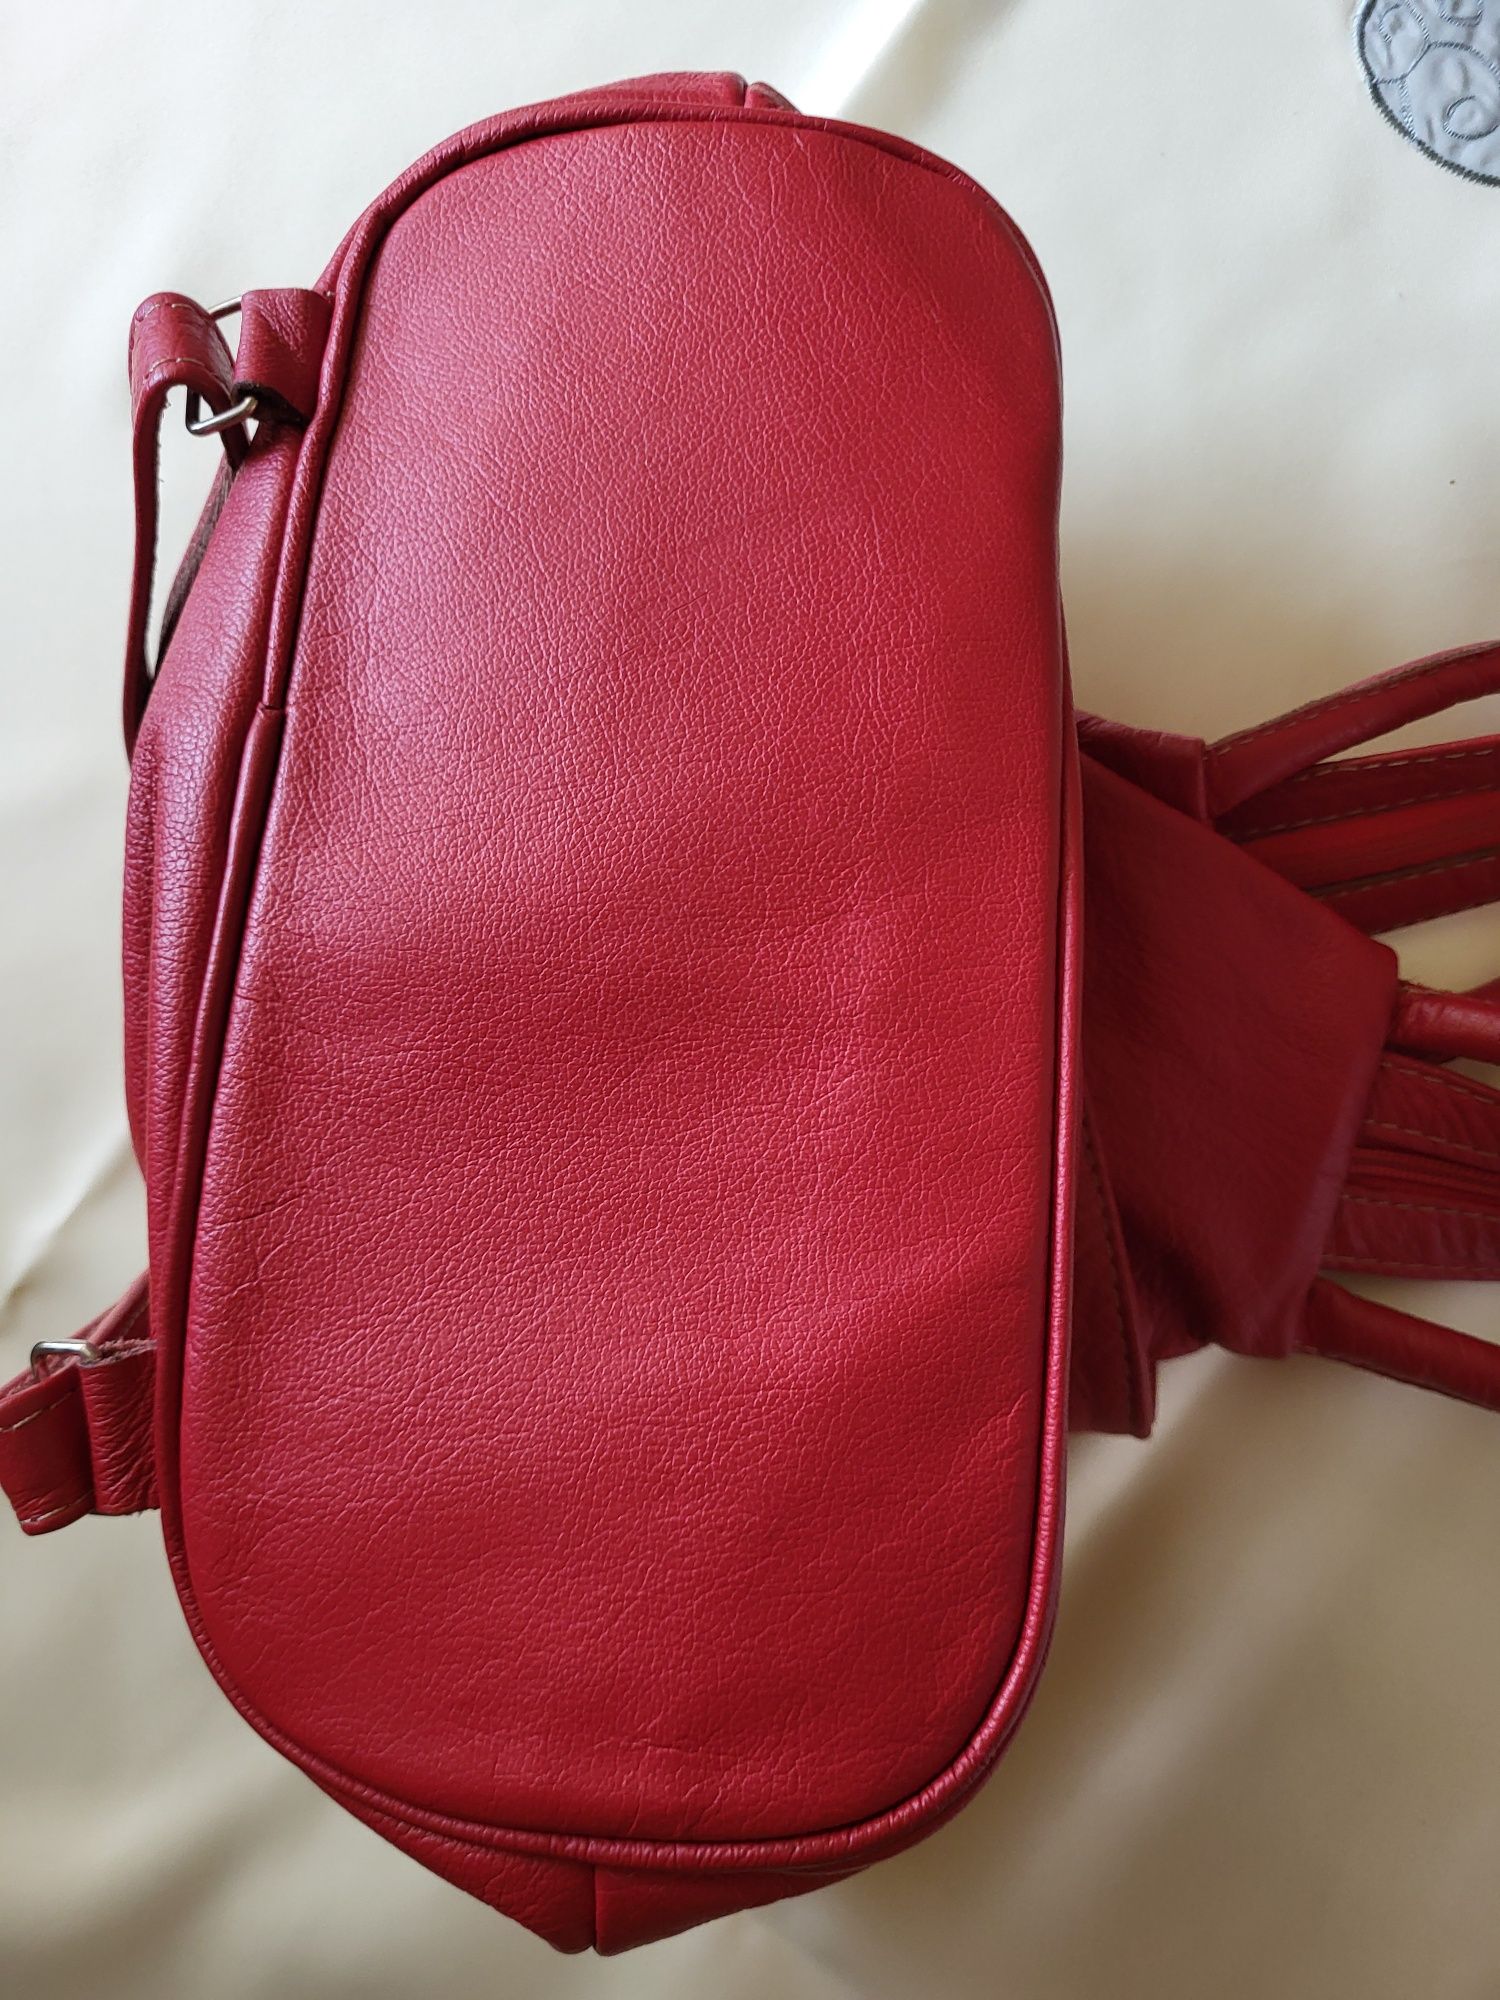 Plecak czerwony o pięknym odcieniu nowy nieużywany